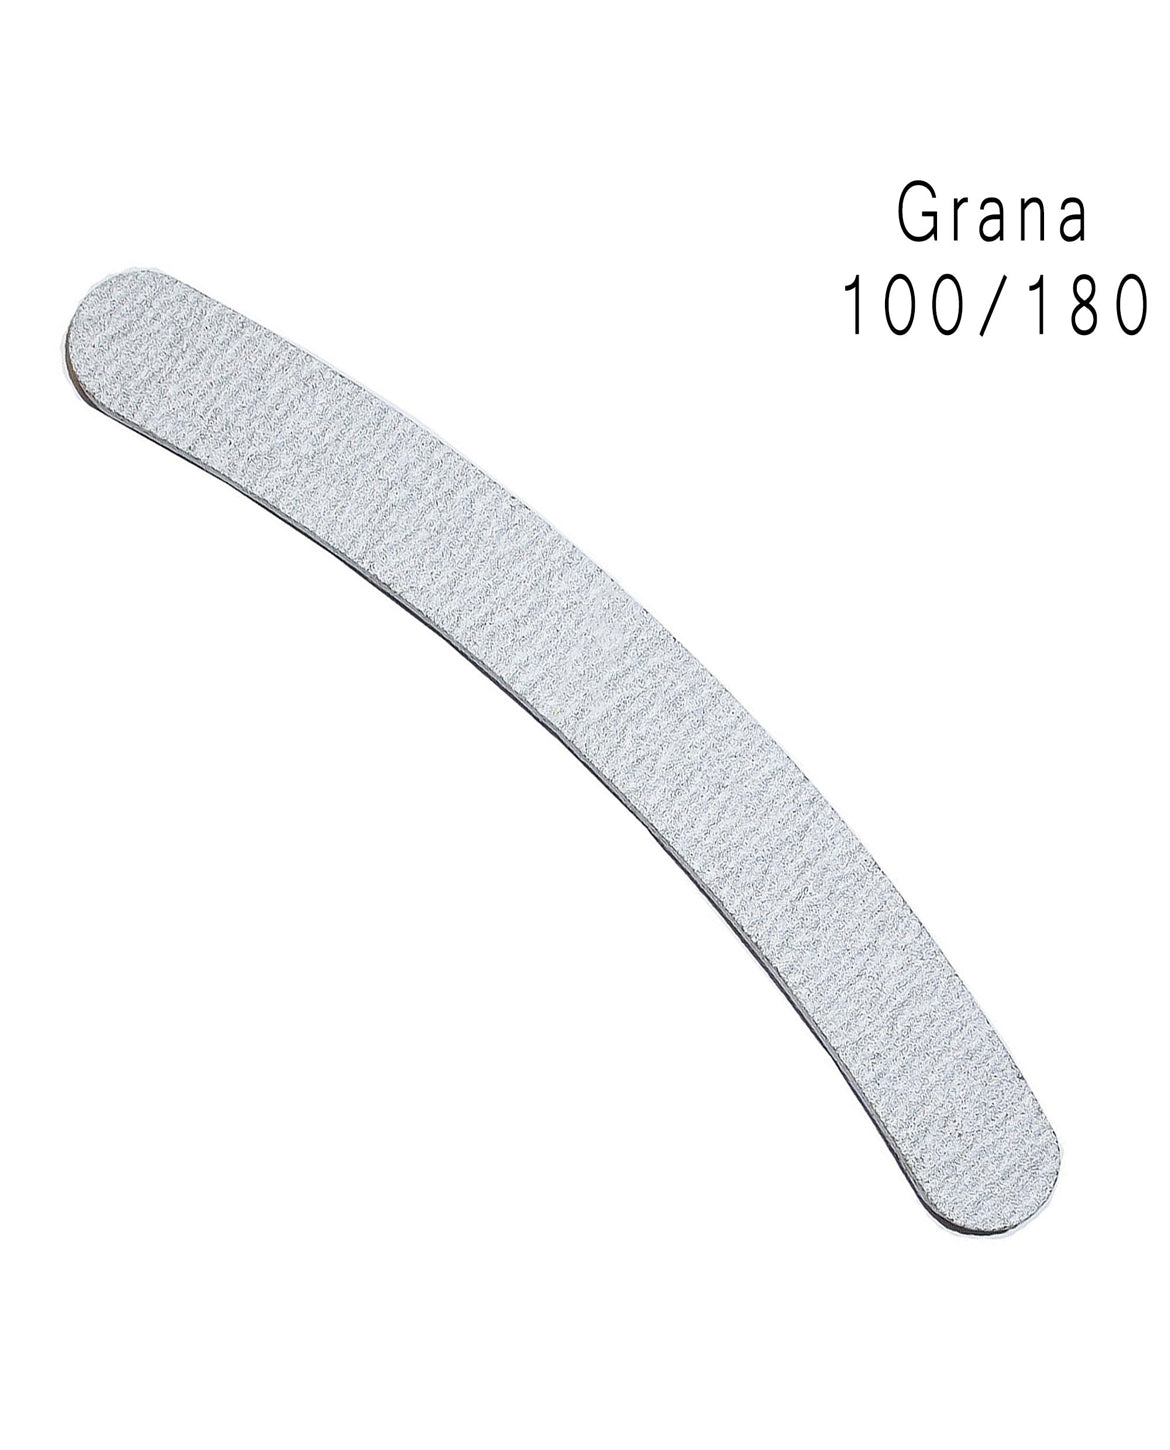 Limetta  - Curva Grigia 100/180